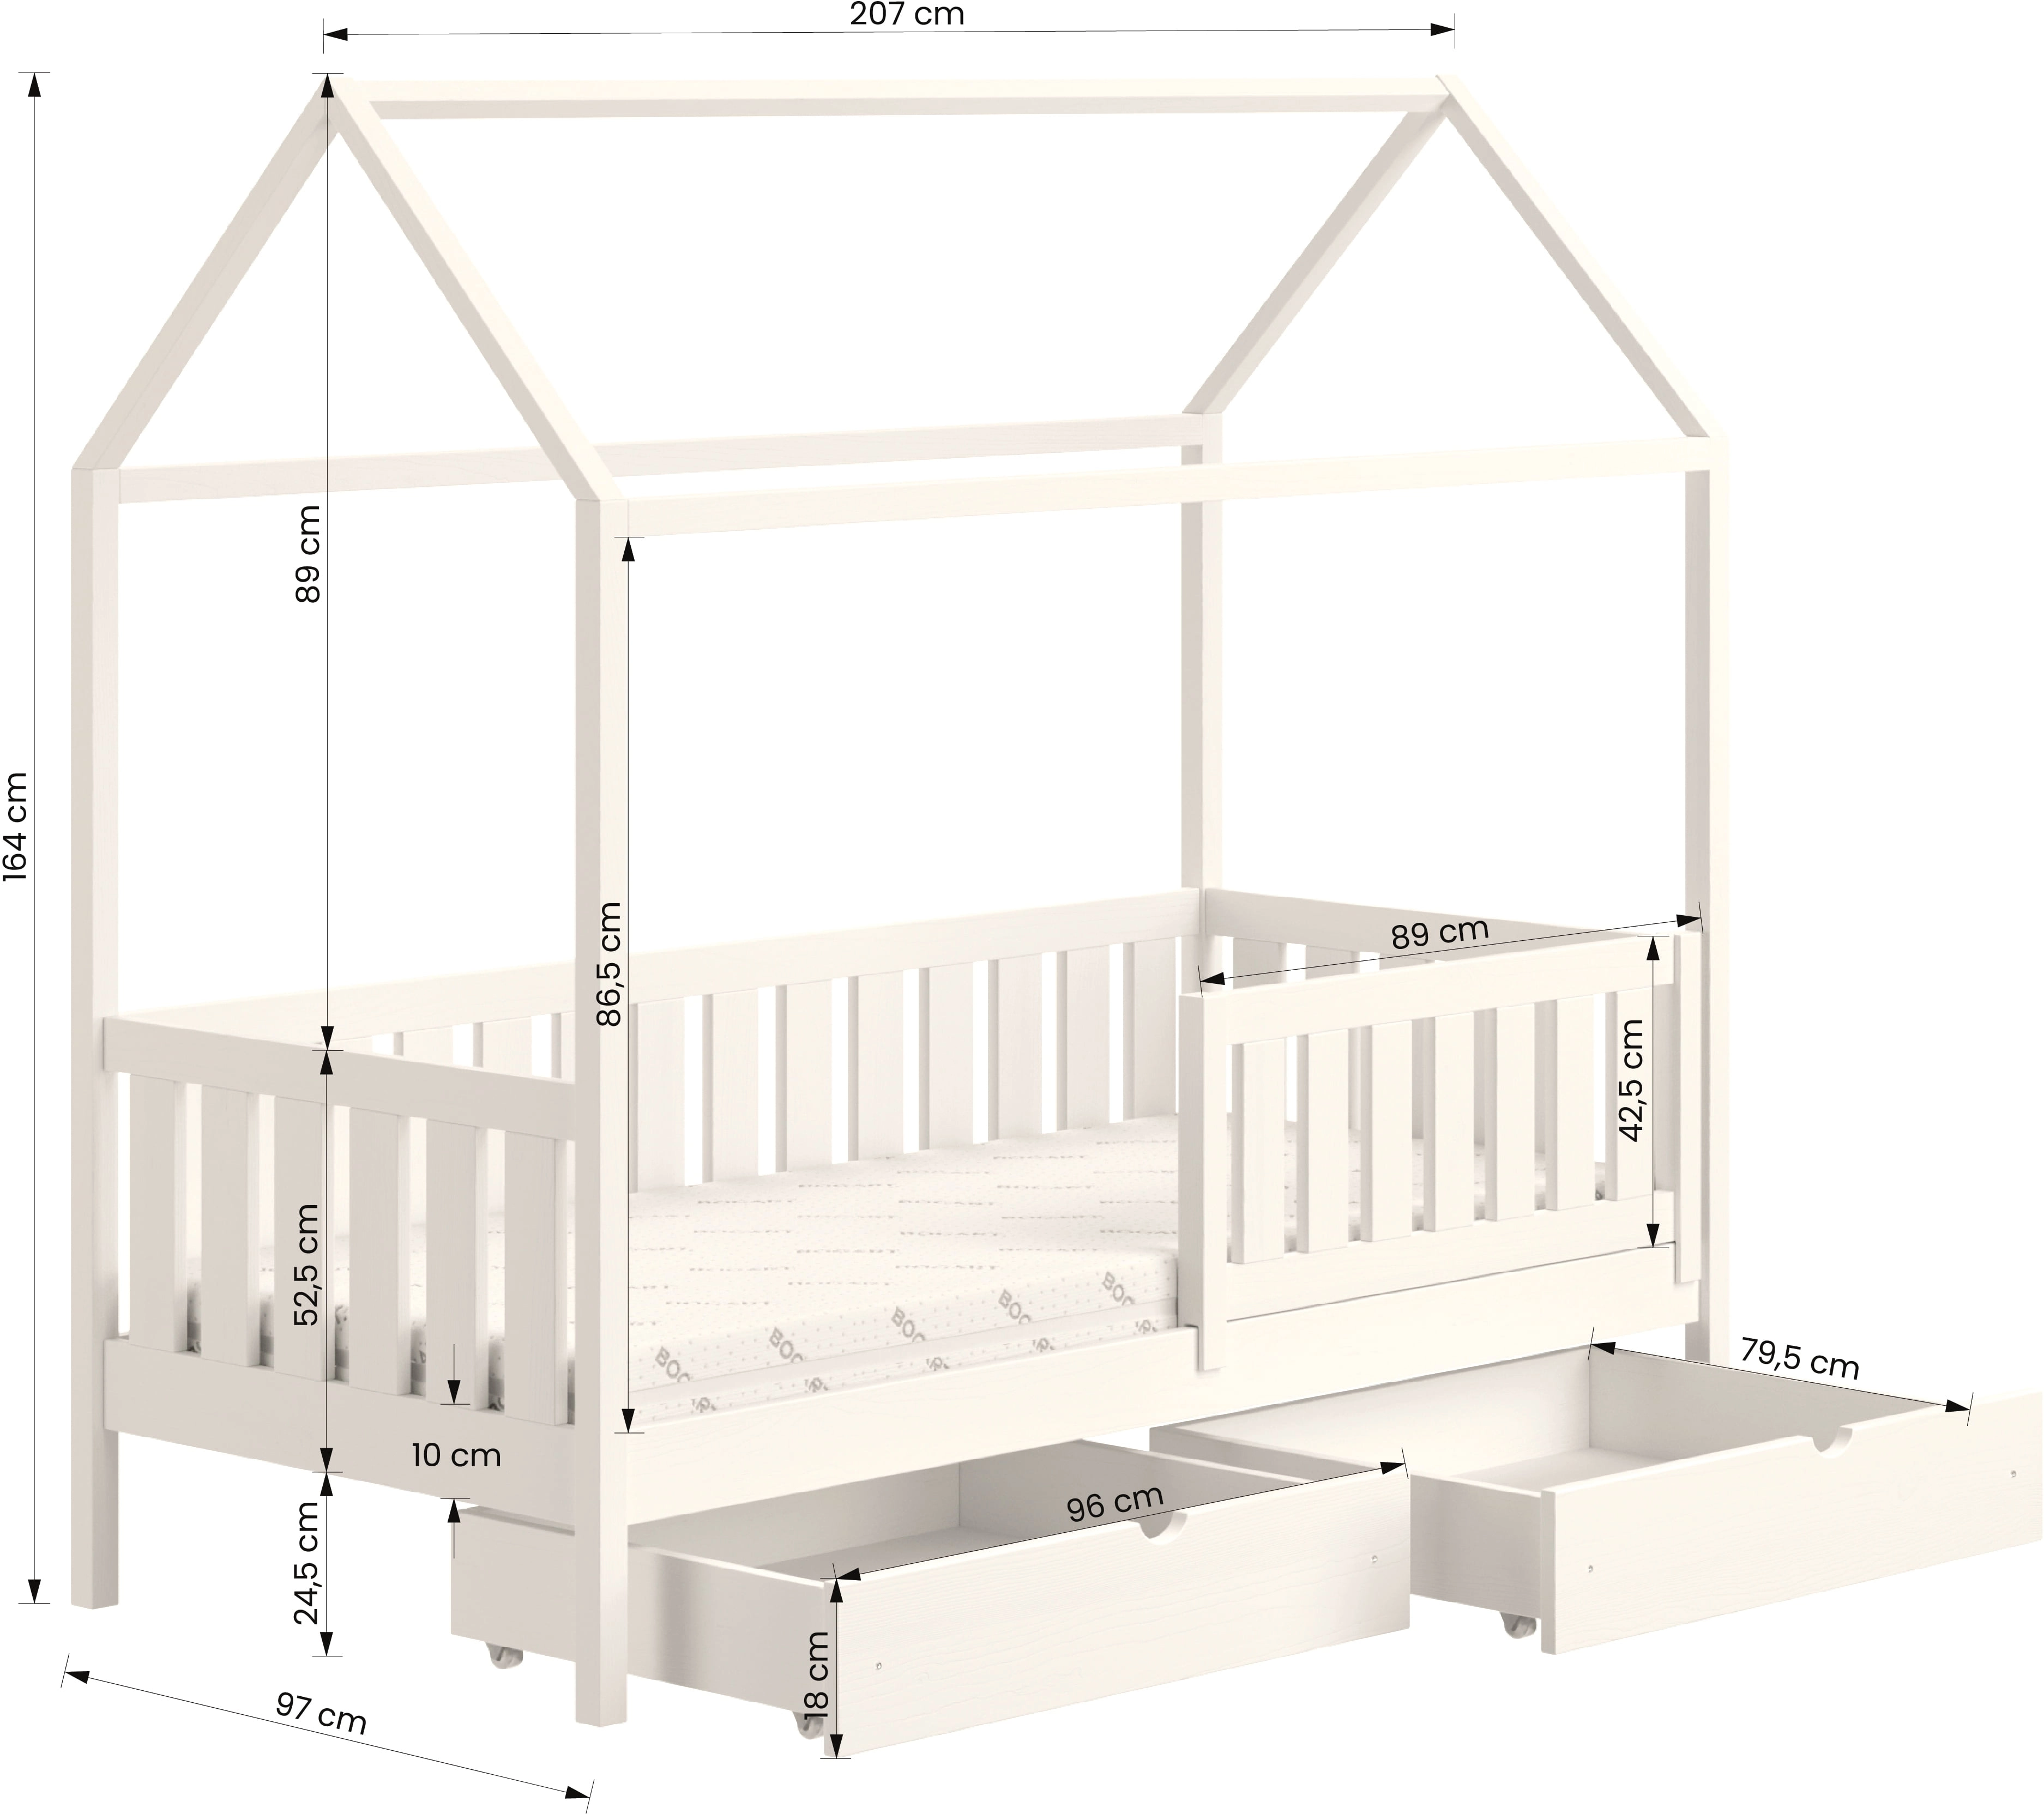 Dětská postel přízemní domeček se zásuvkami Nemos II 90x200